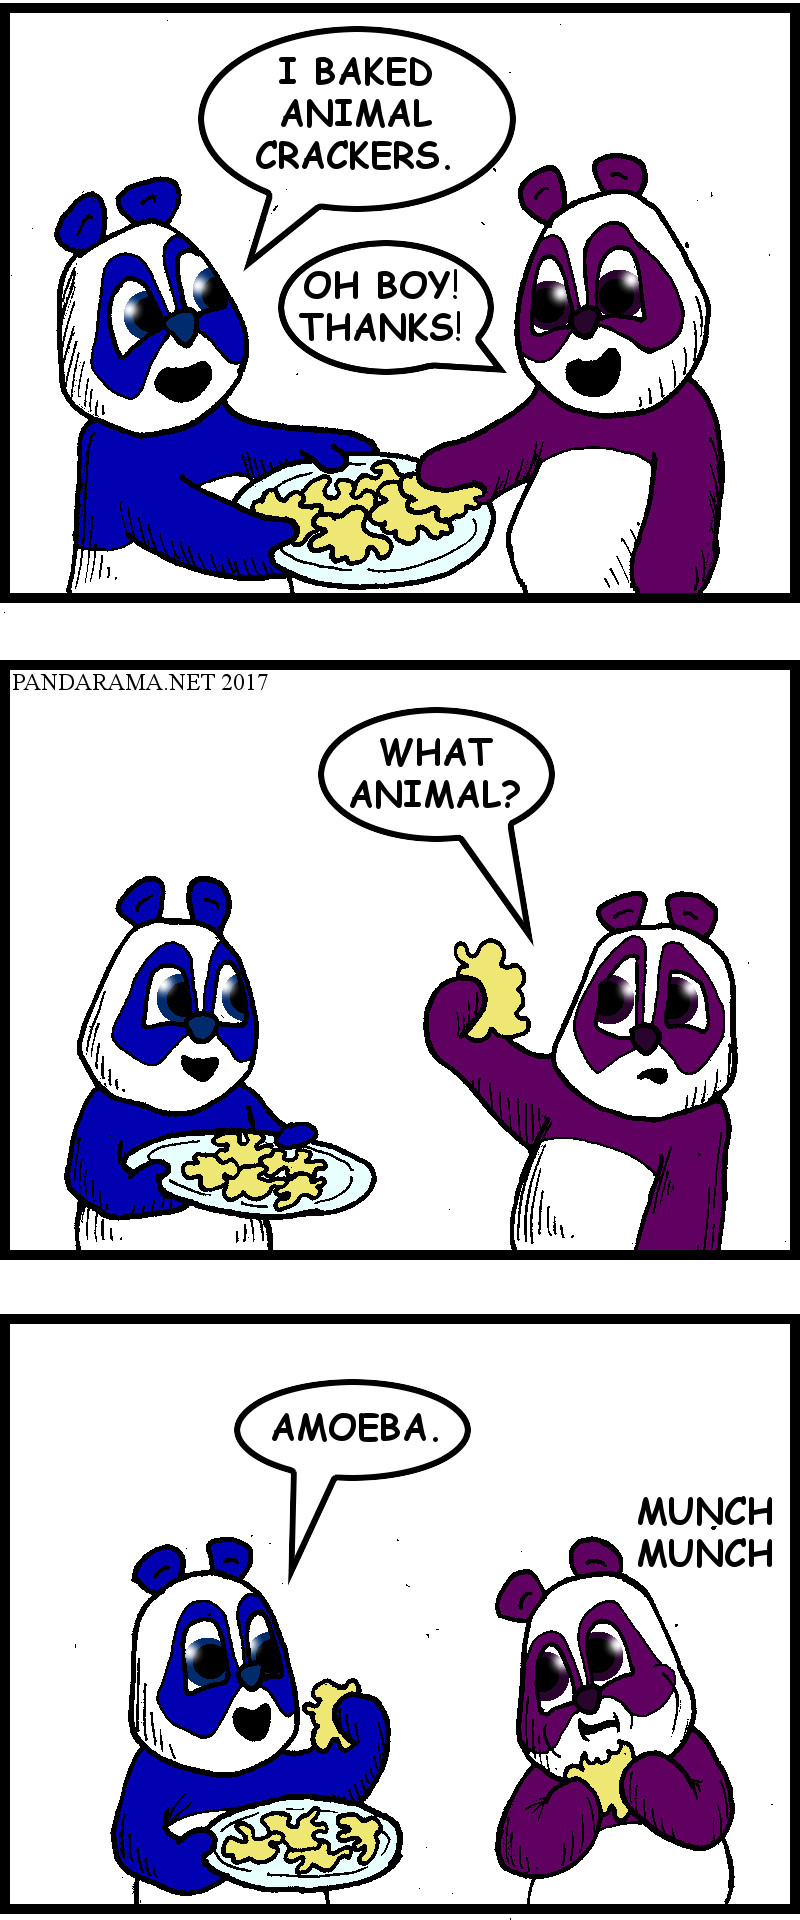 amoeba-shaped animal cookies. comic. amoeba animal crackers. comics. animal crackers cartoon.